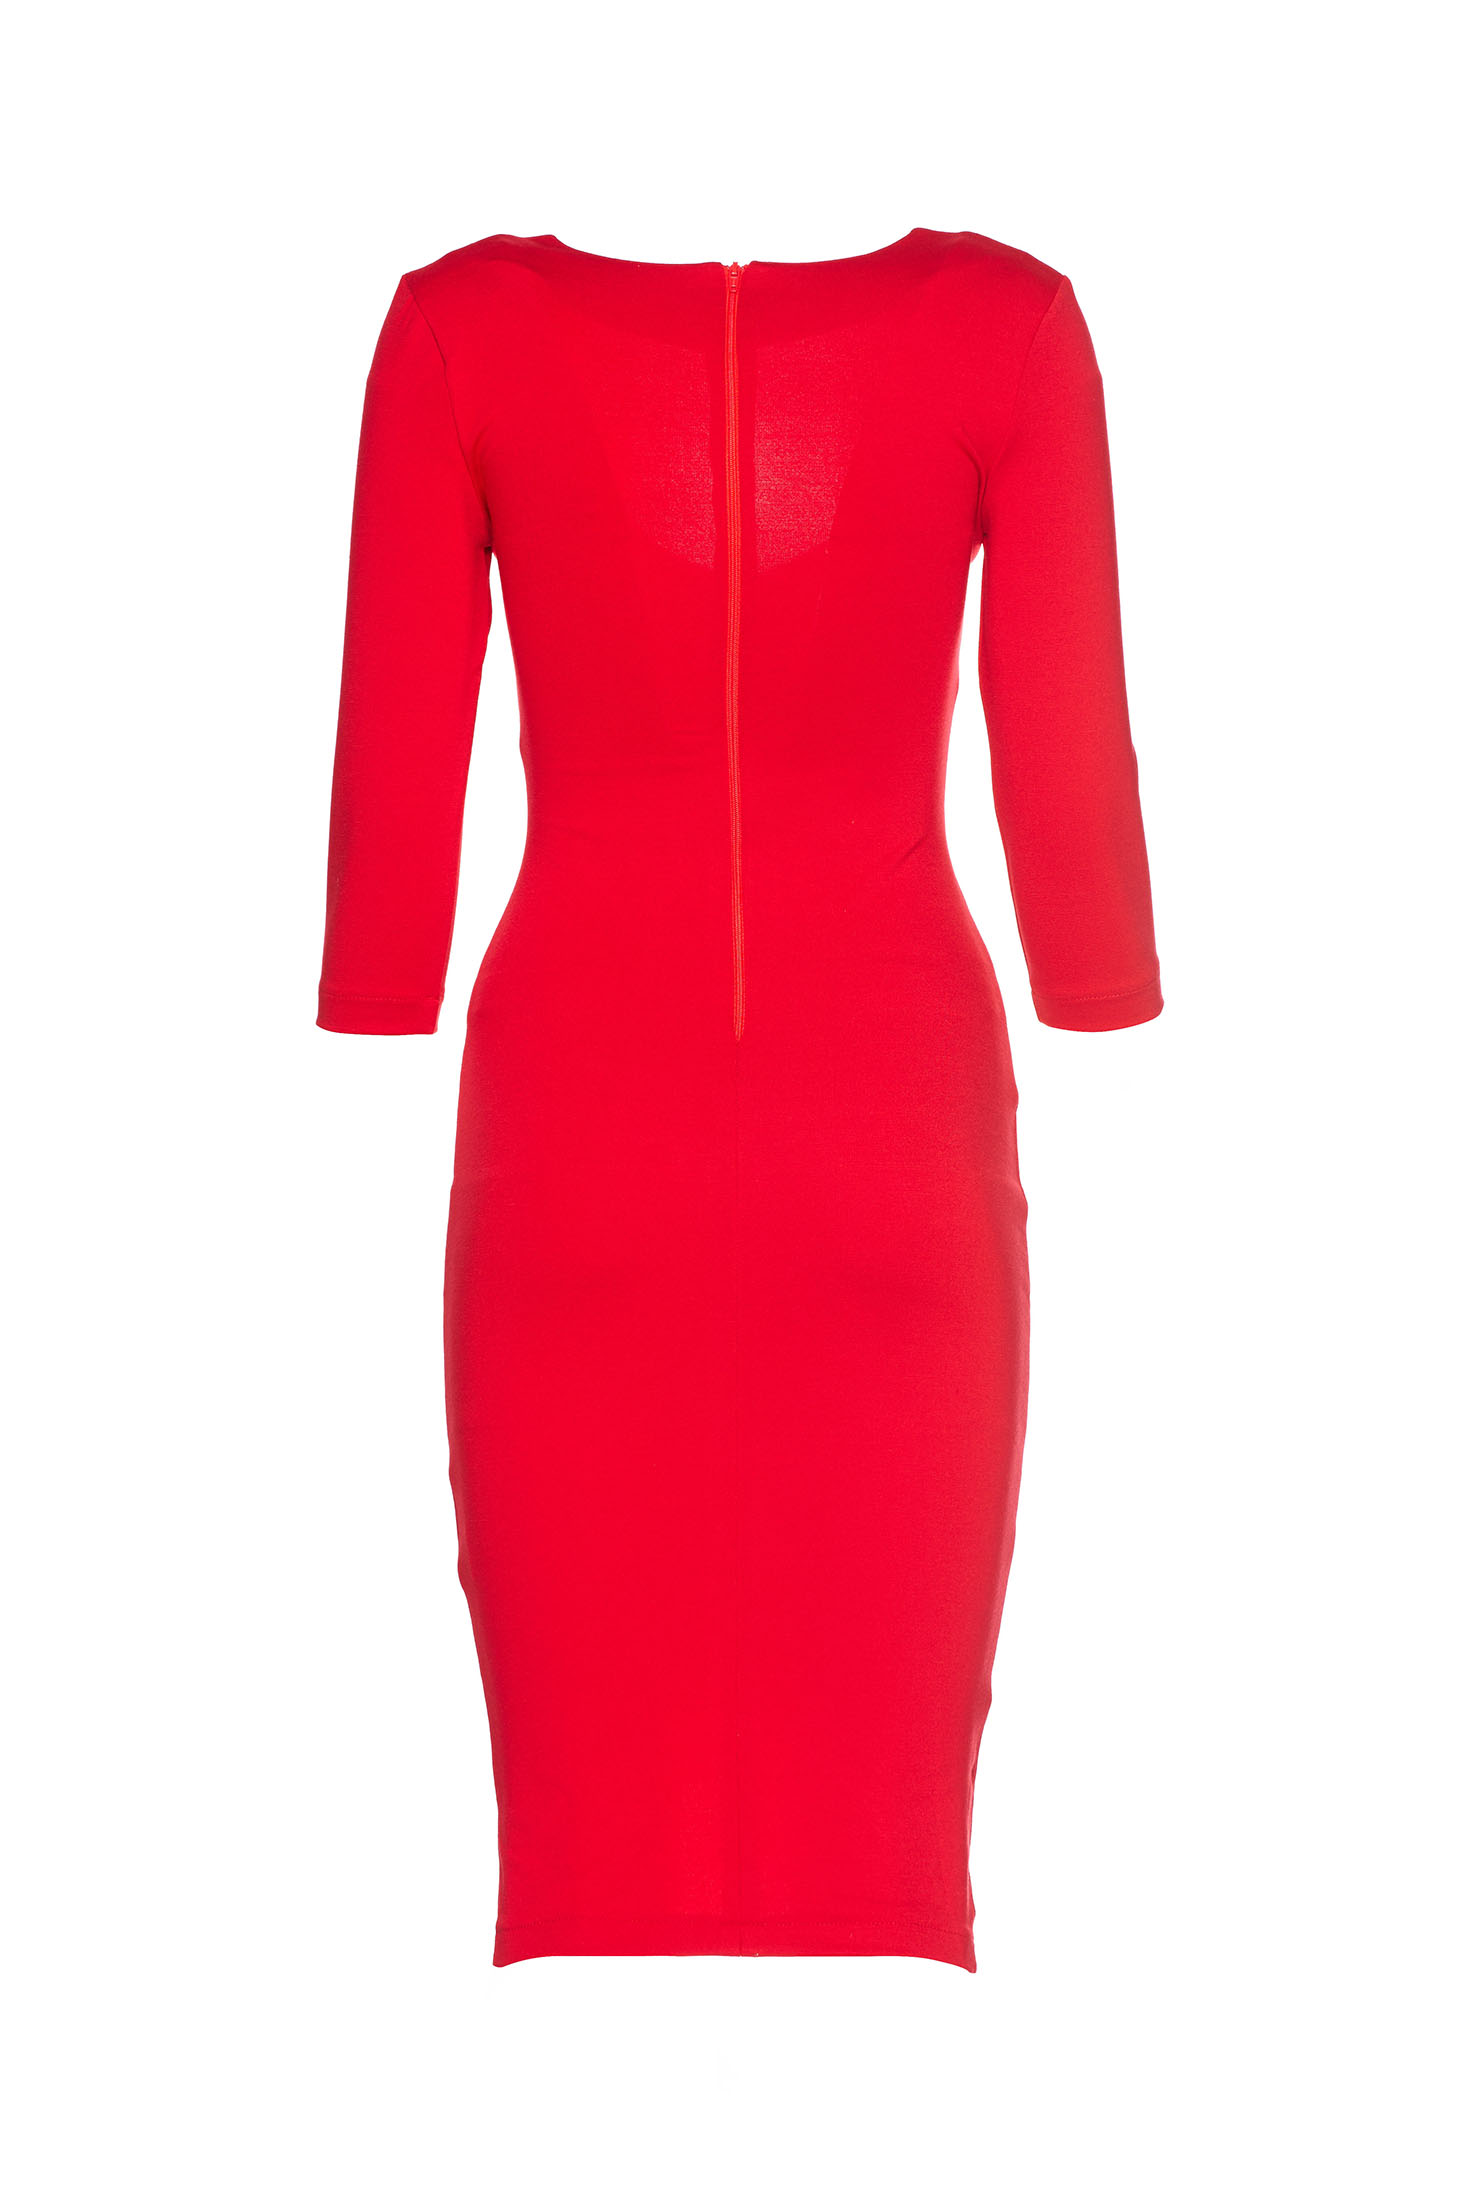 StarShinerS Sensual Dream Red Dress